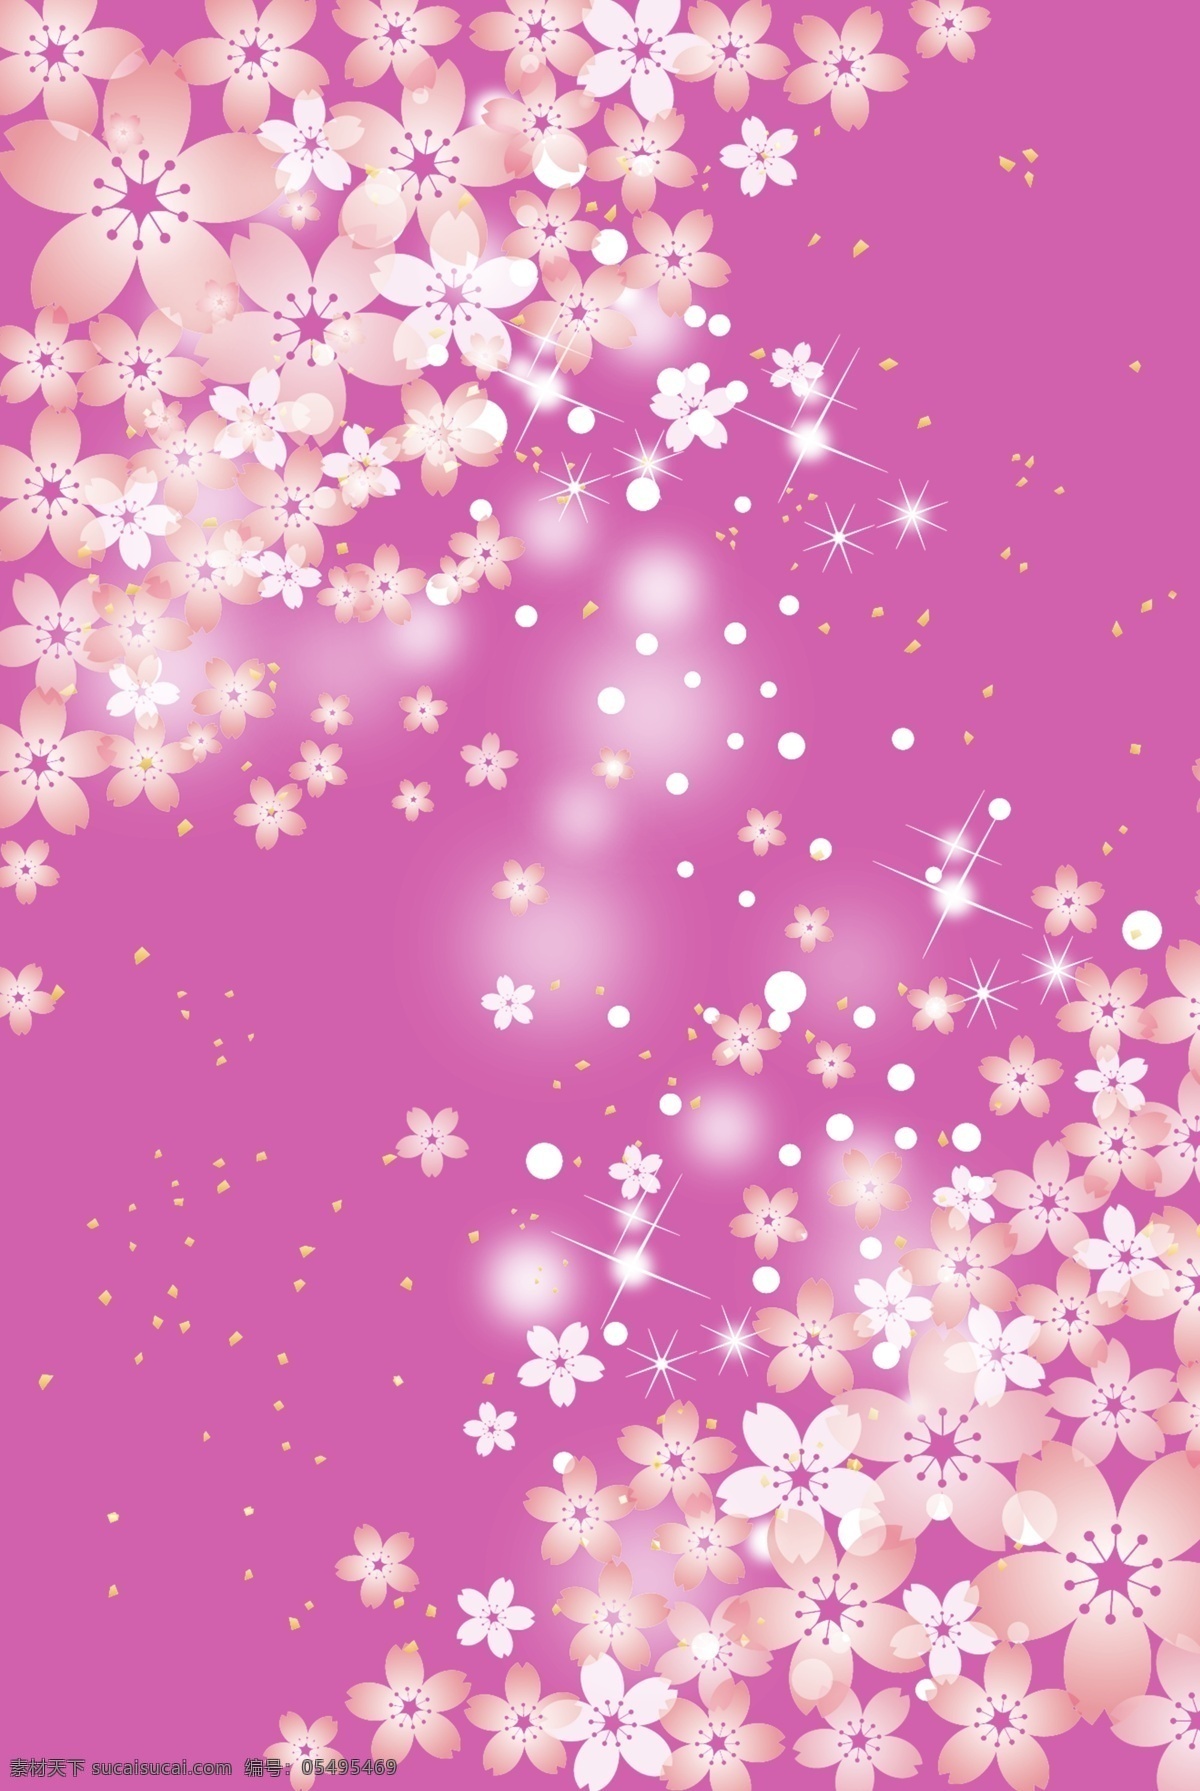 春天 唯美 樱花 矢量图 背景 小清新 底纹 春季 植物 粉色 花朵 花瓣 鲜花 盛开 繁花 粉紫